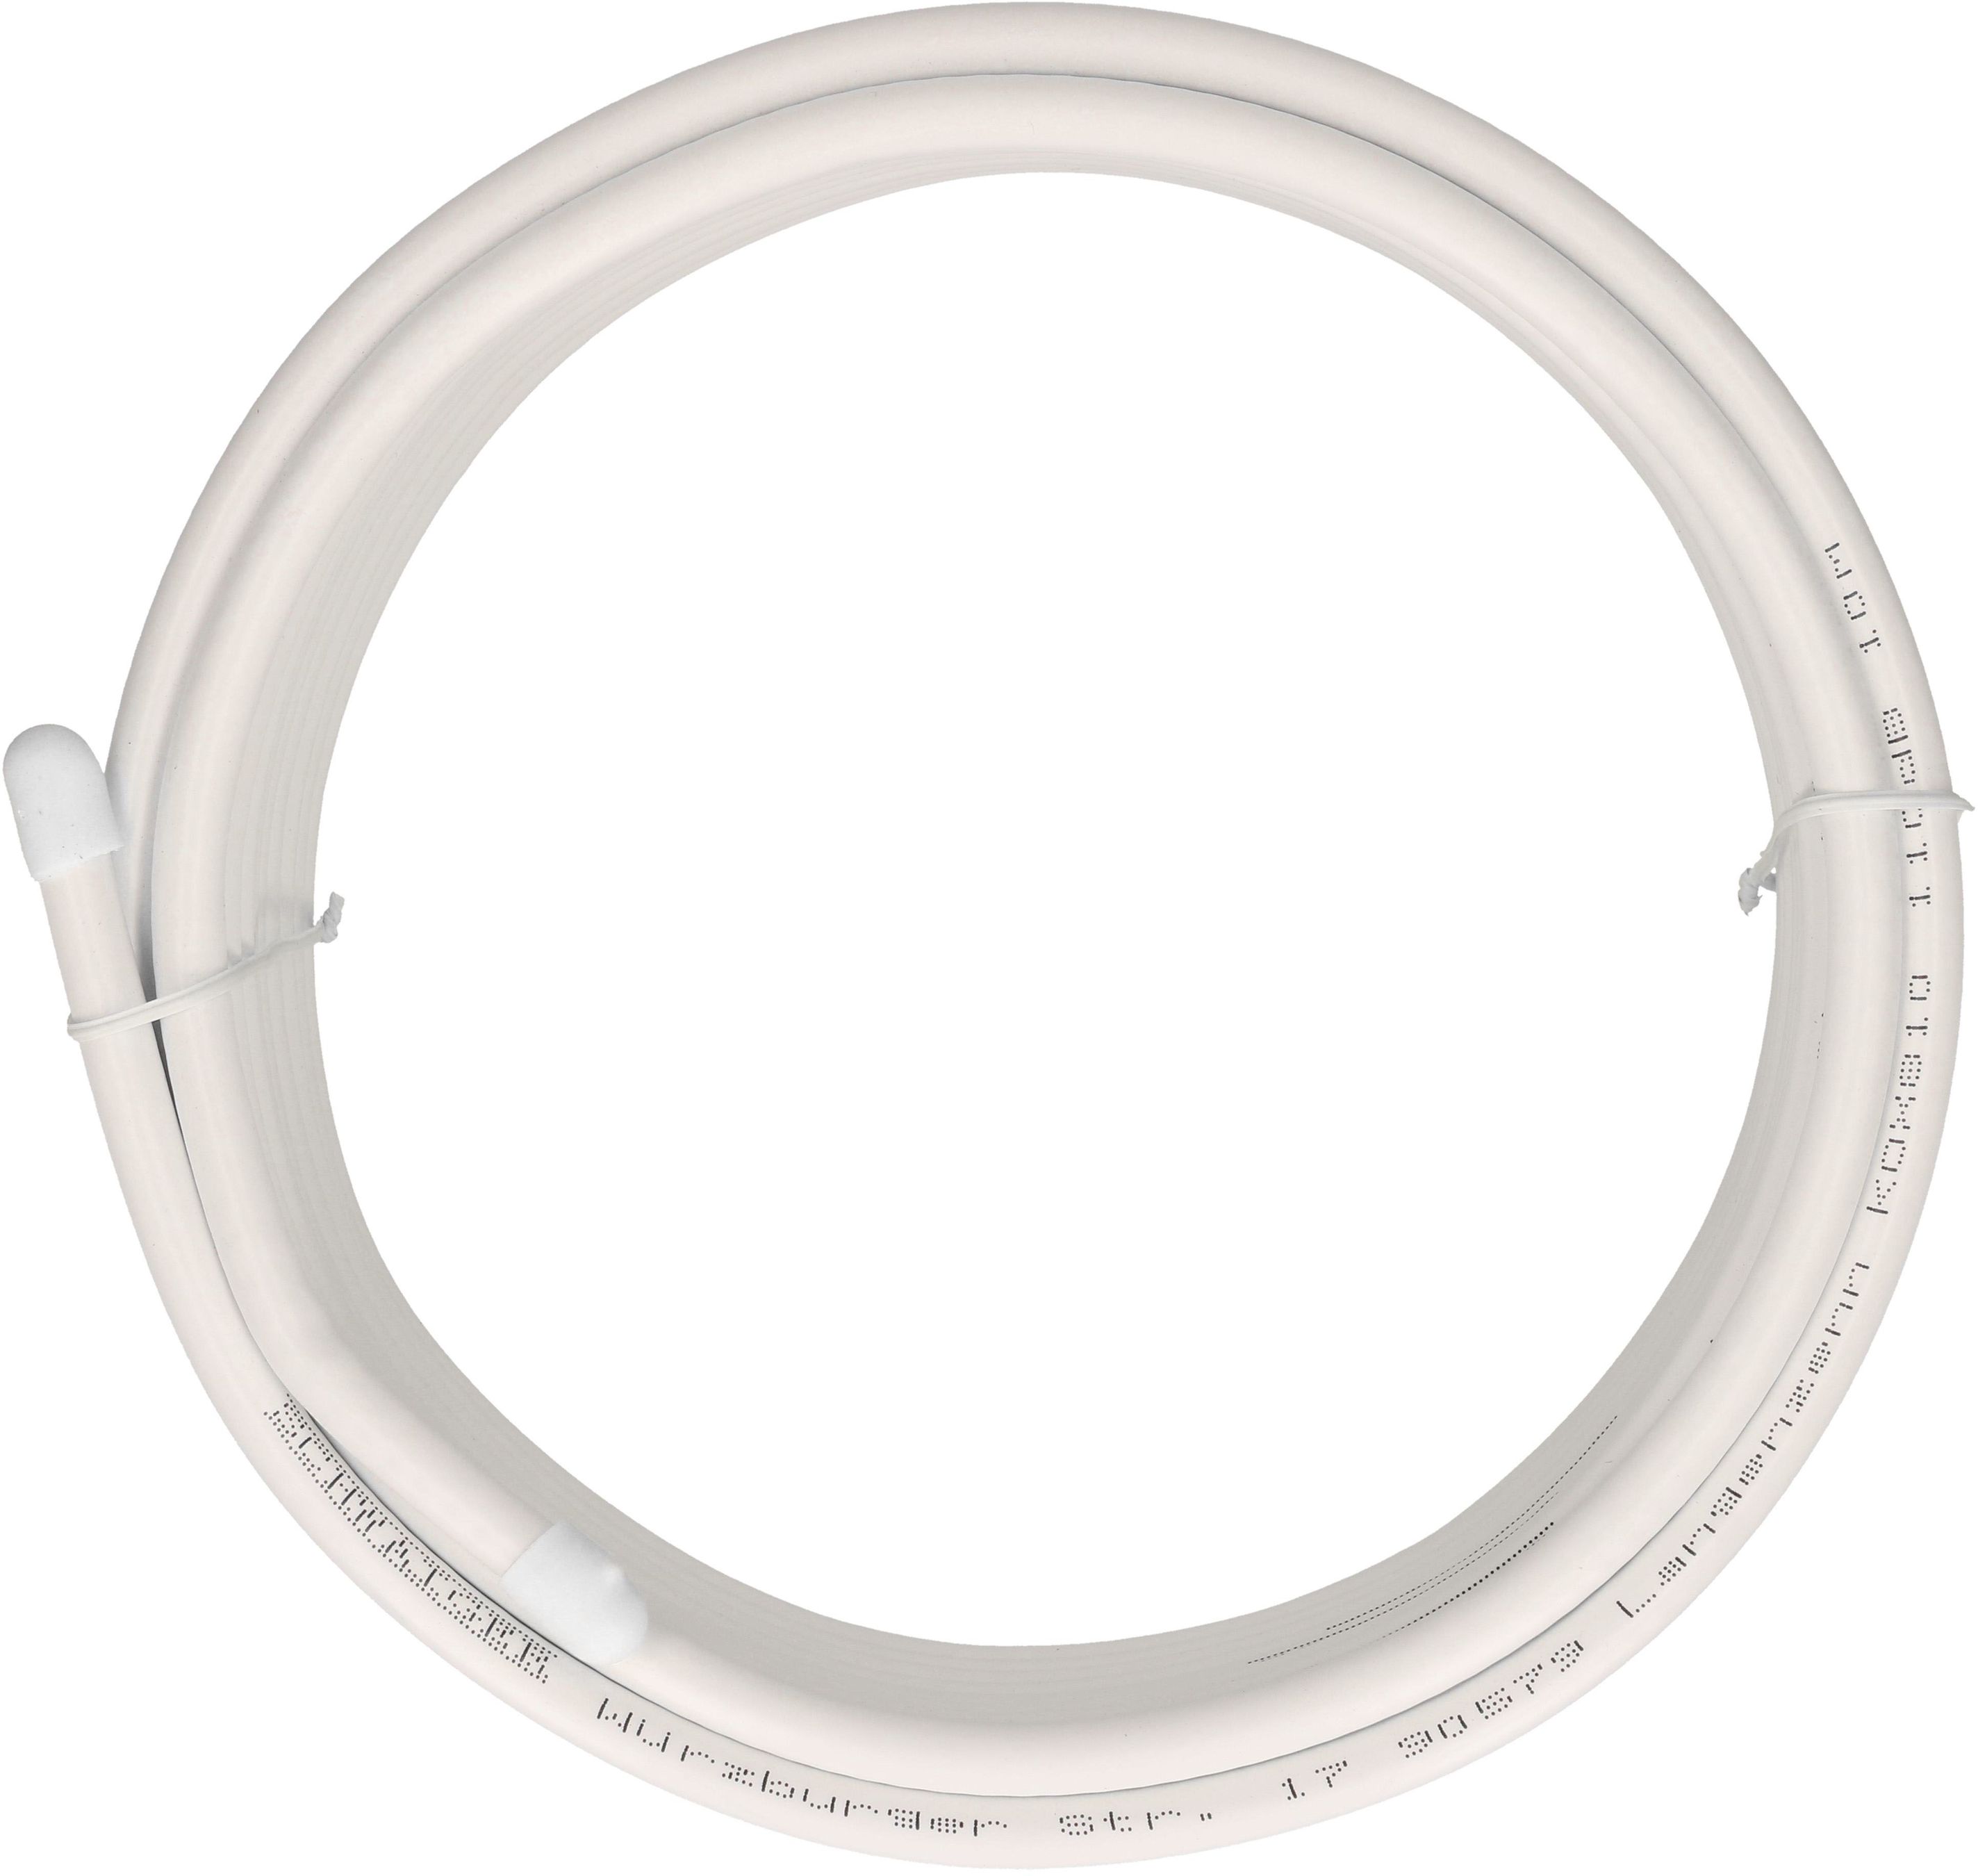 Câble coaxial SAT 10m blanc